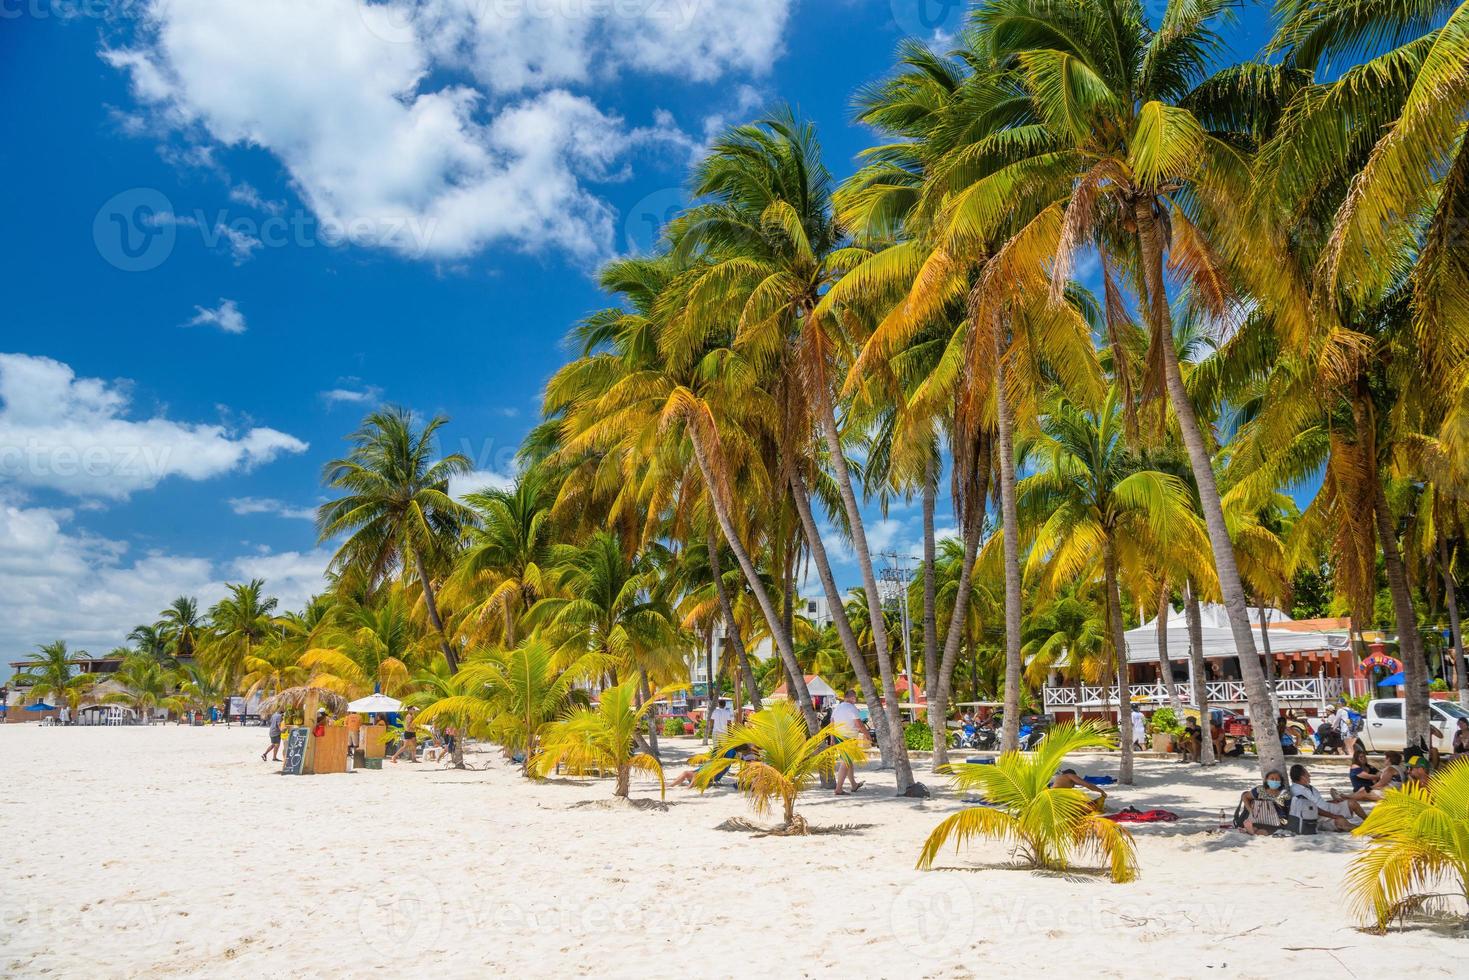 les gens prennent le soleil à l'ombre des cocotiers sur la plage de sable blanc, l'île d'isla mujeres, la mer des caraïbes, cancun, yucatan, mexique photo